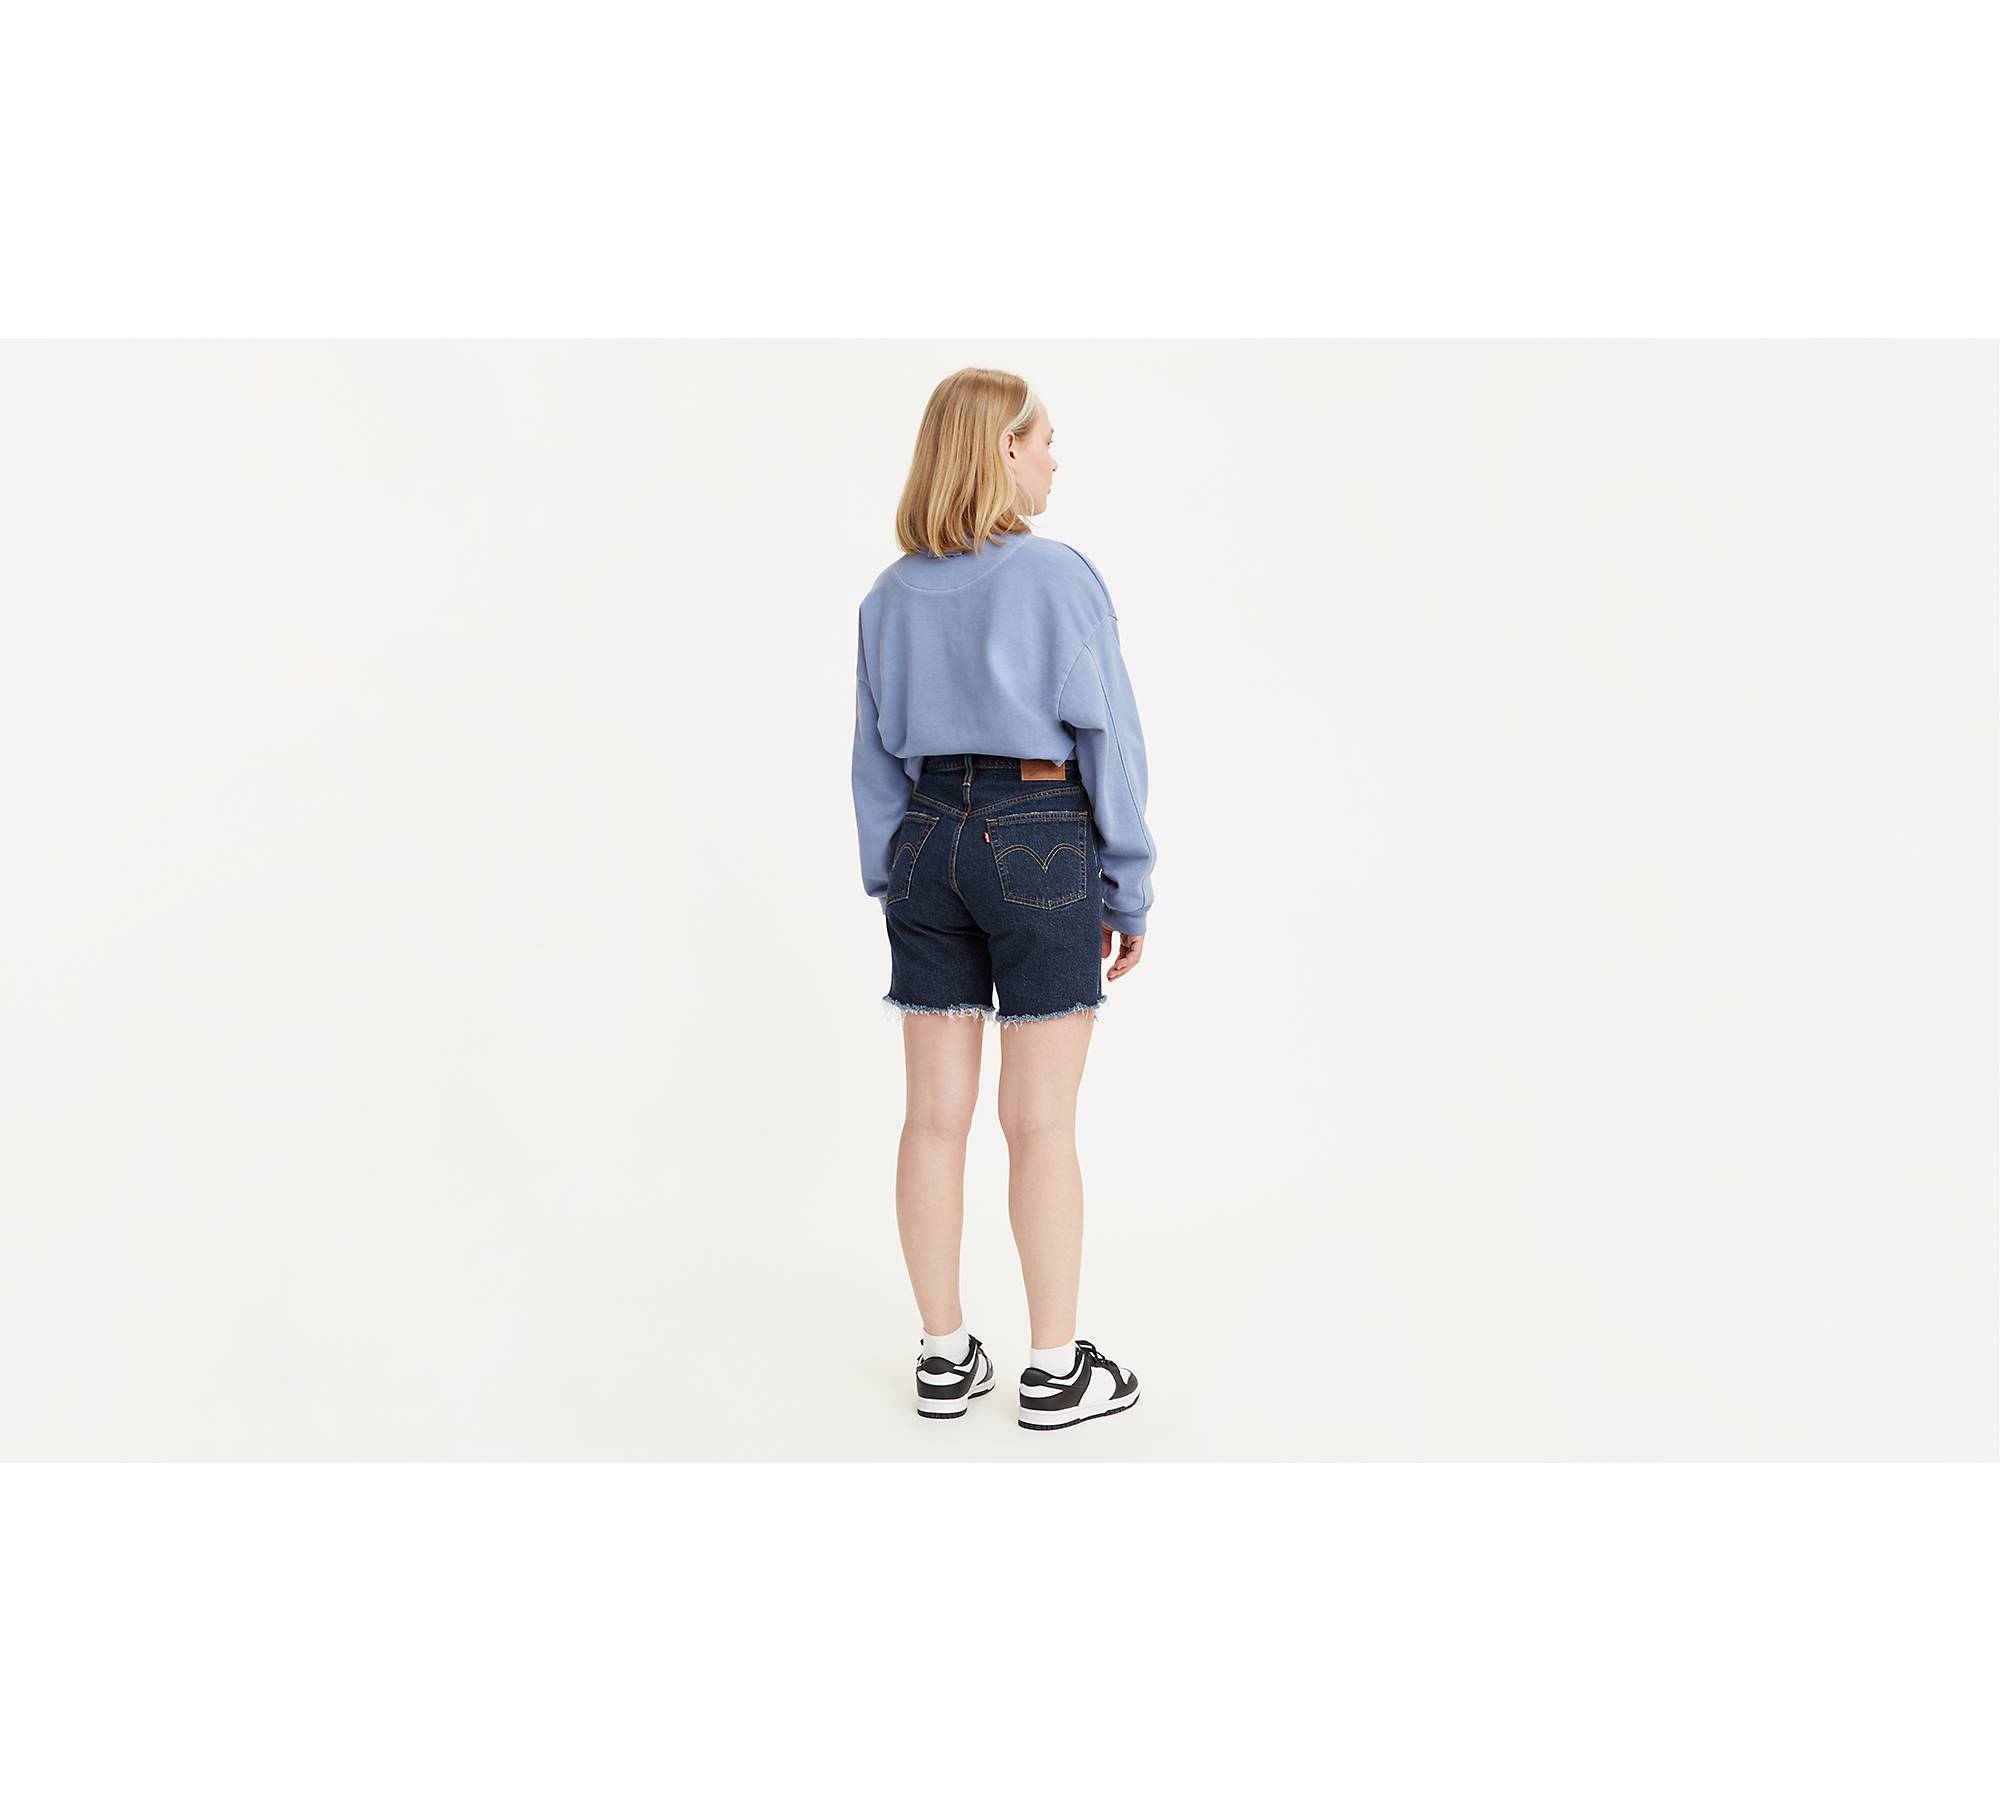 Shorts Jeans Fem Levis High Rise - Compre Online